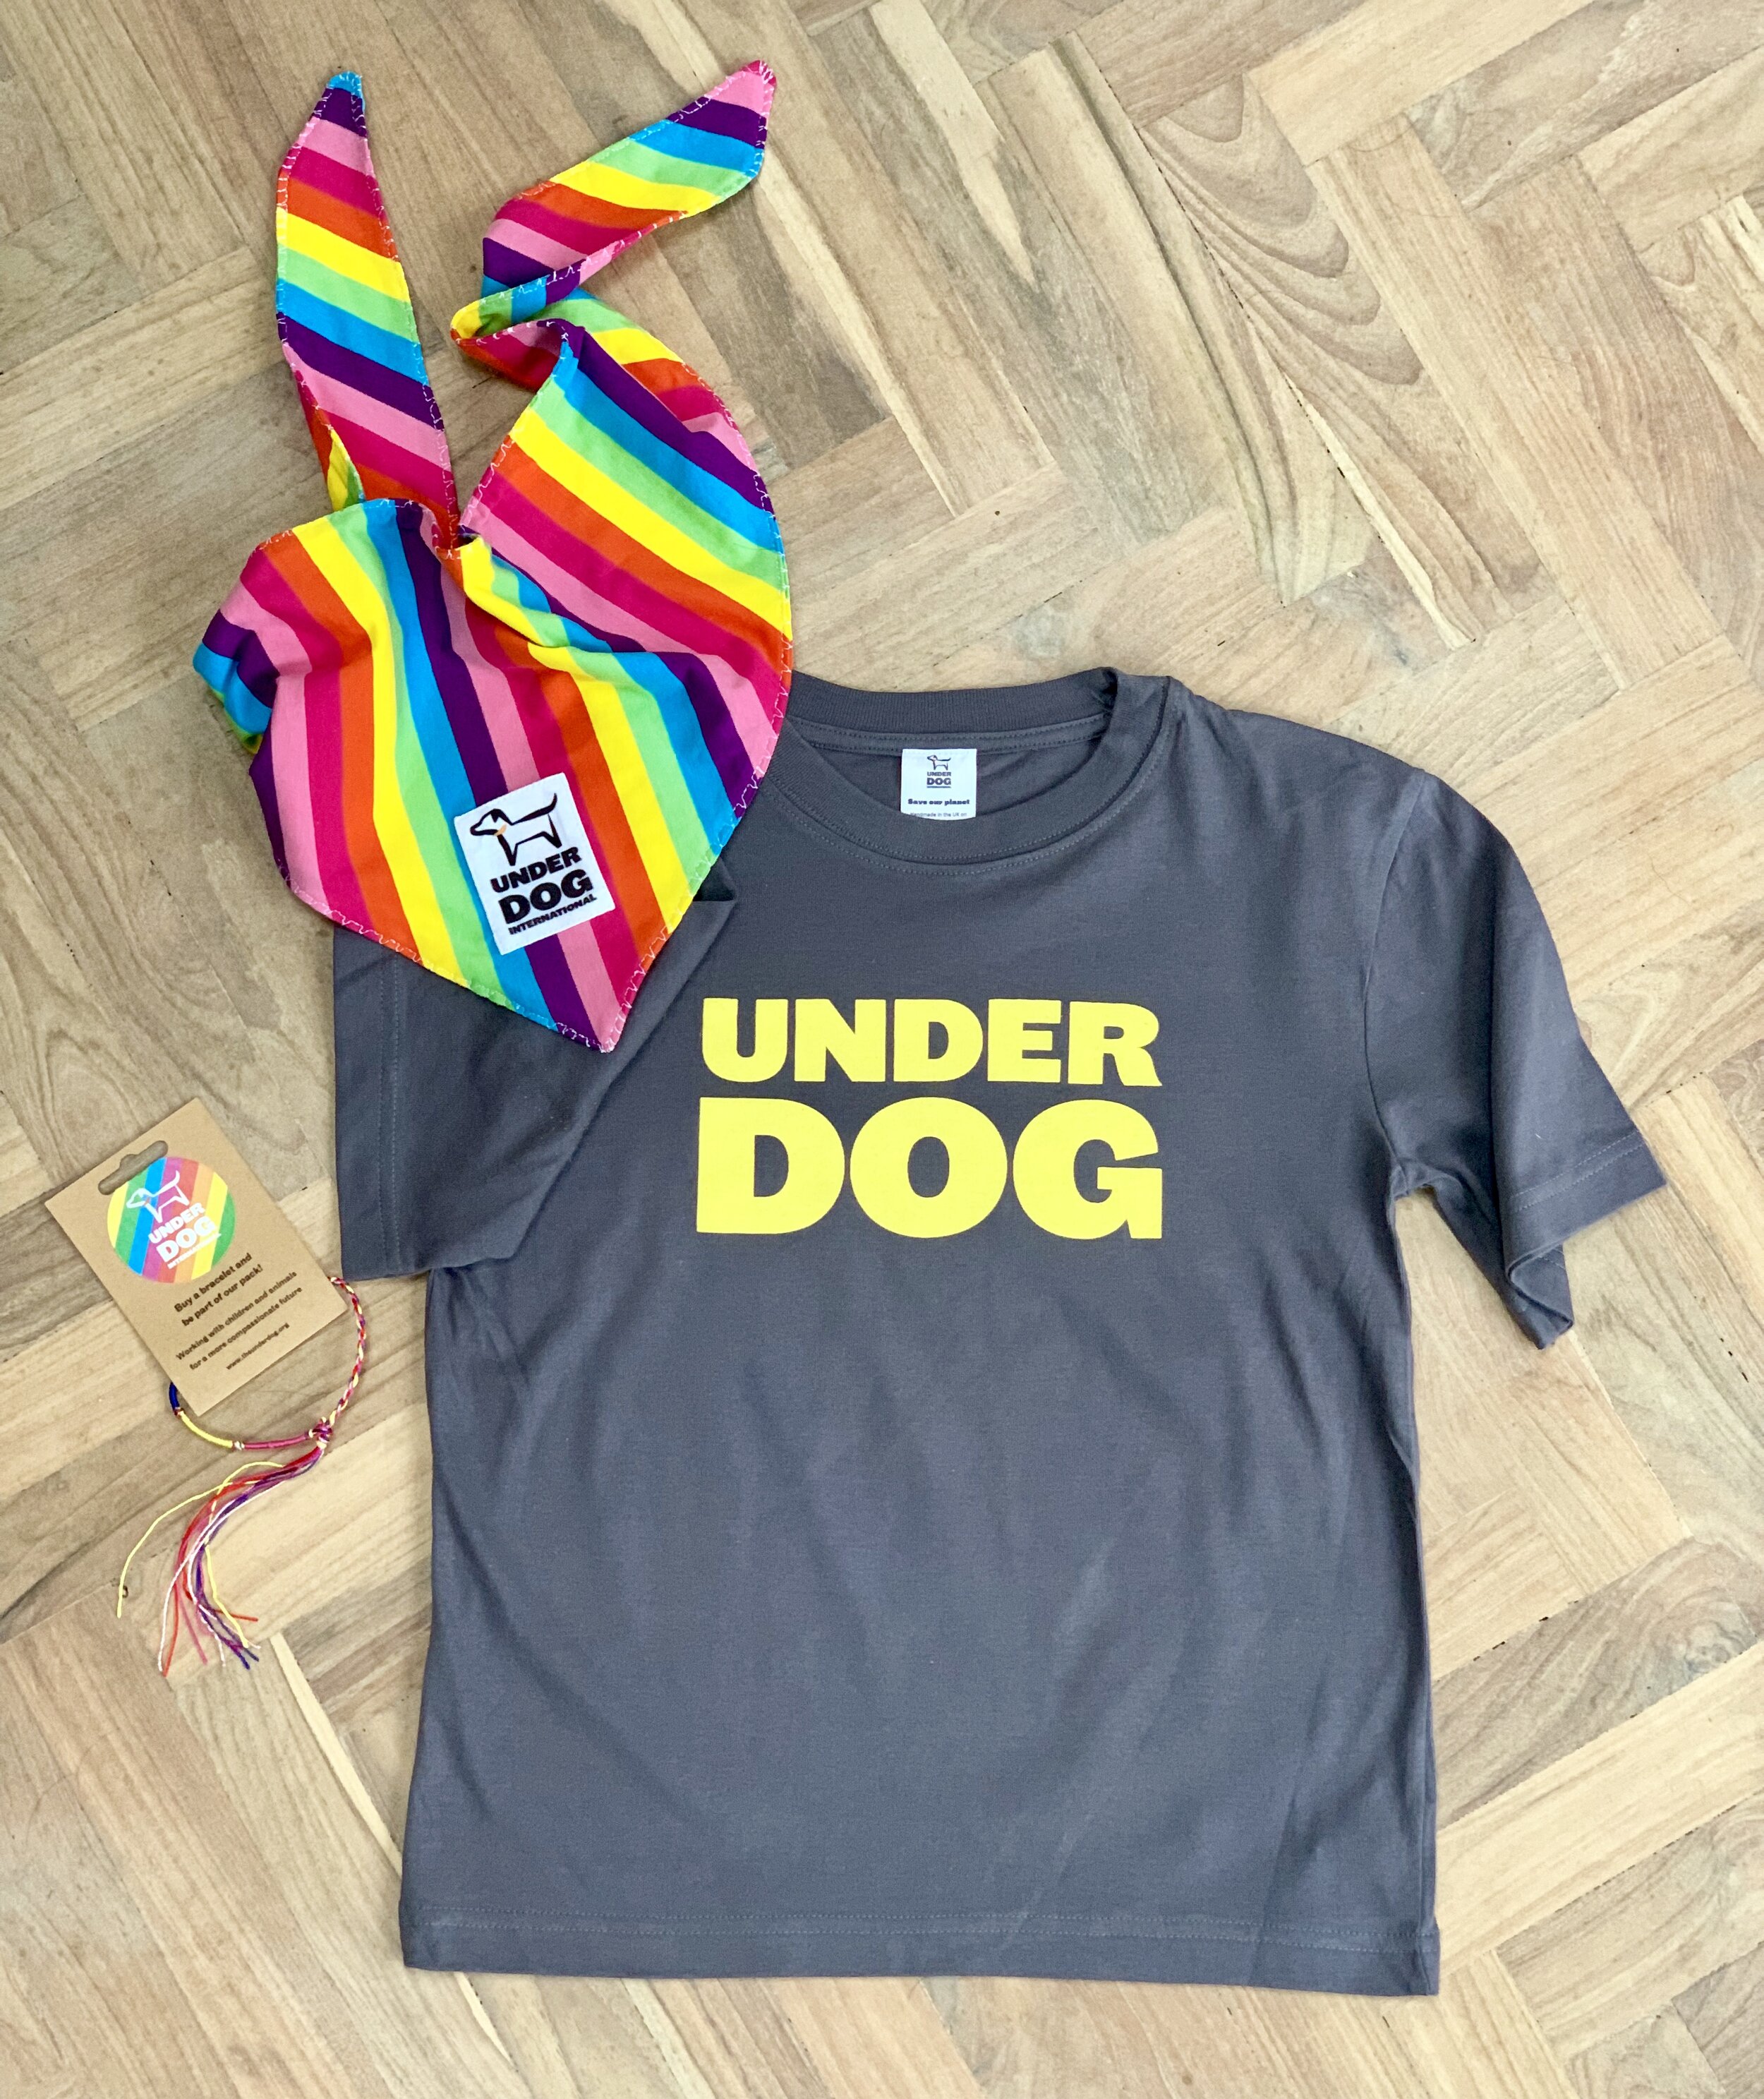 underdog tee shirt